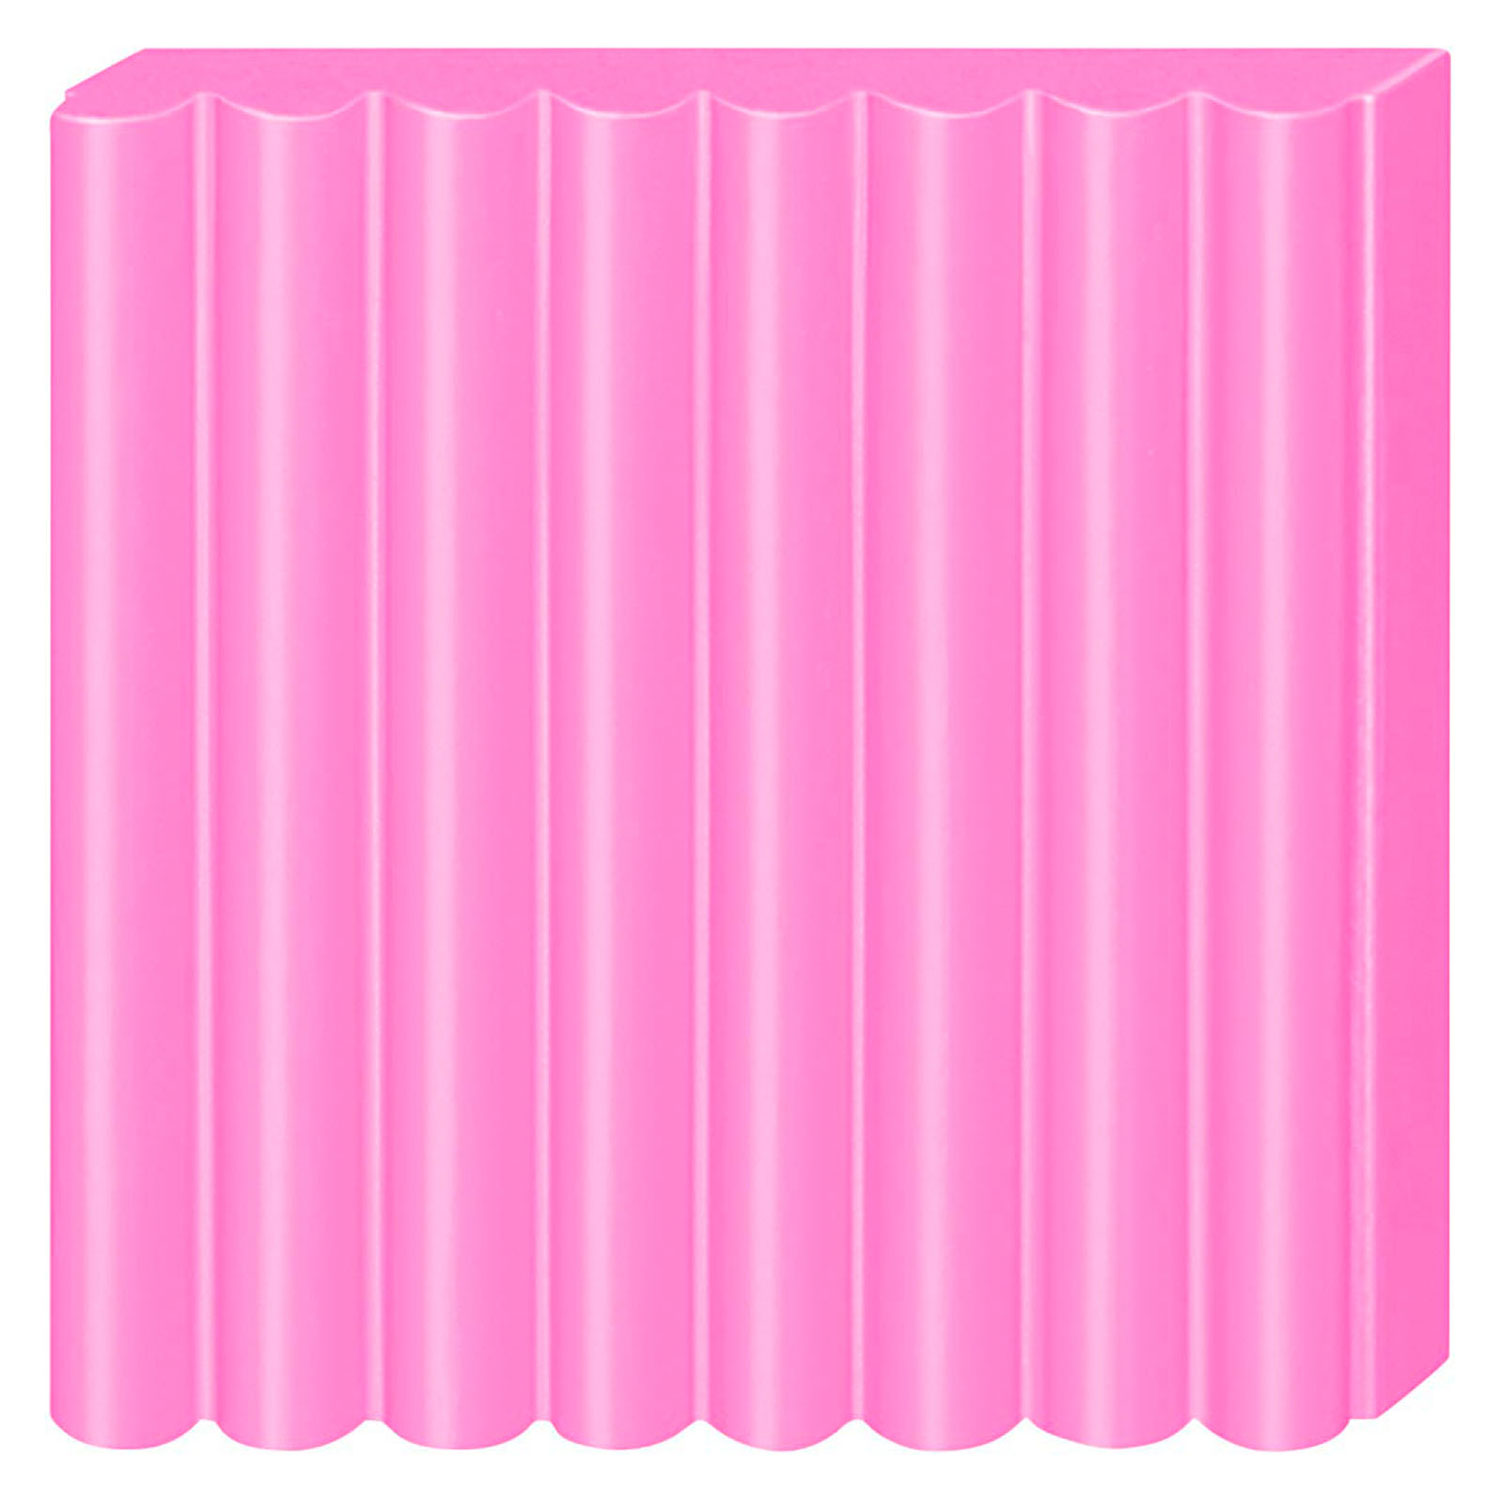 Fimo Effect Modelliermasse Neon Pink, 57gr